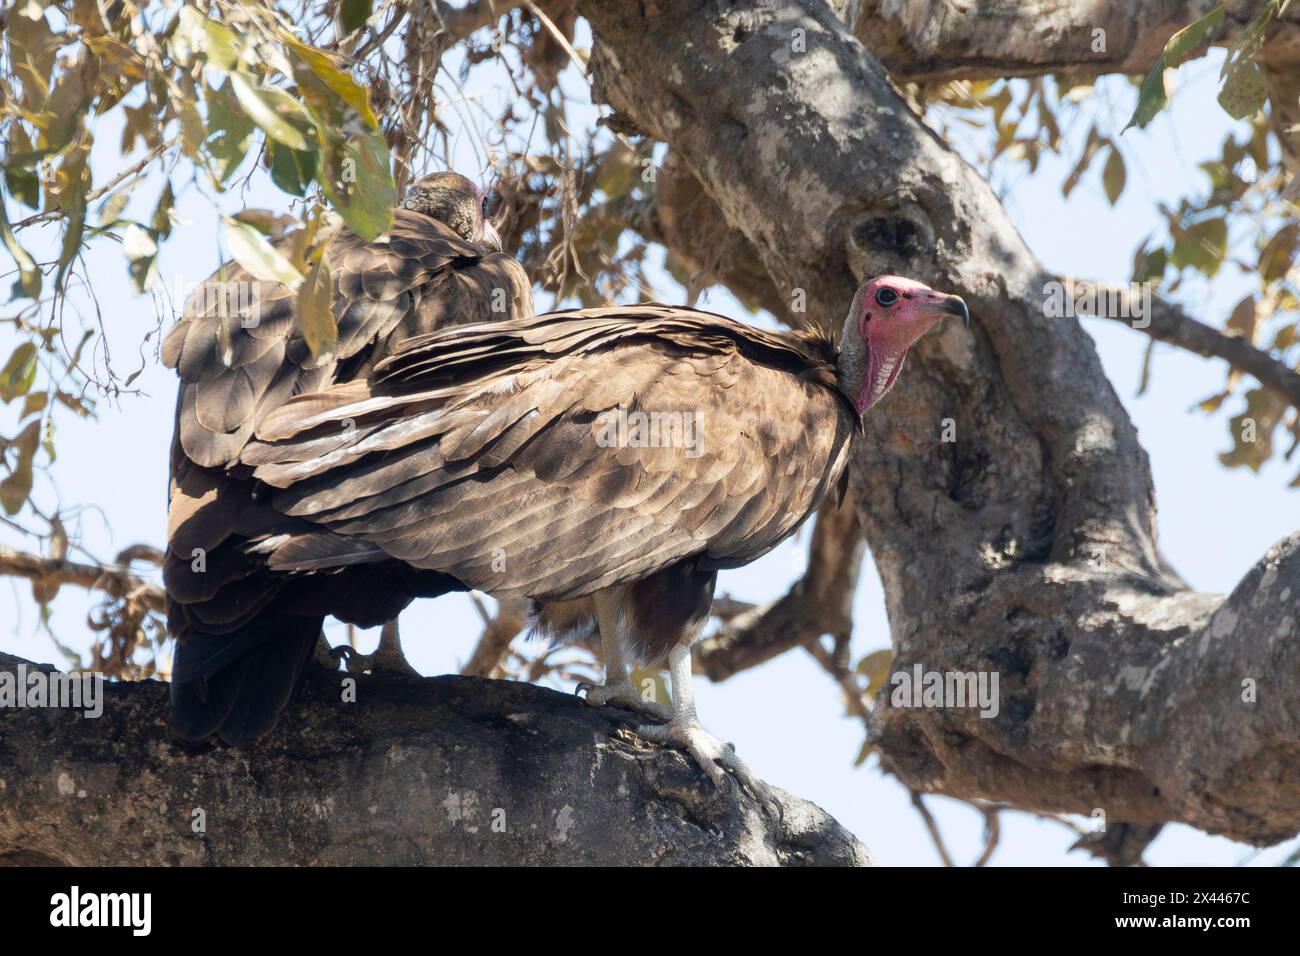 Vulture à capuche (Necrosyrtes monachus) avec peau rouge du visage, parc national Kruger, Afrique du Sud. Considéré comme un oiseau en danger critique d'extinction Banque D'Images